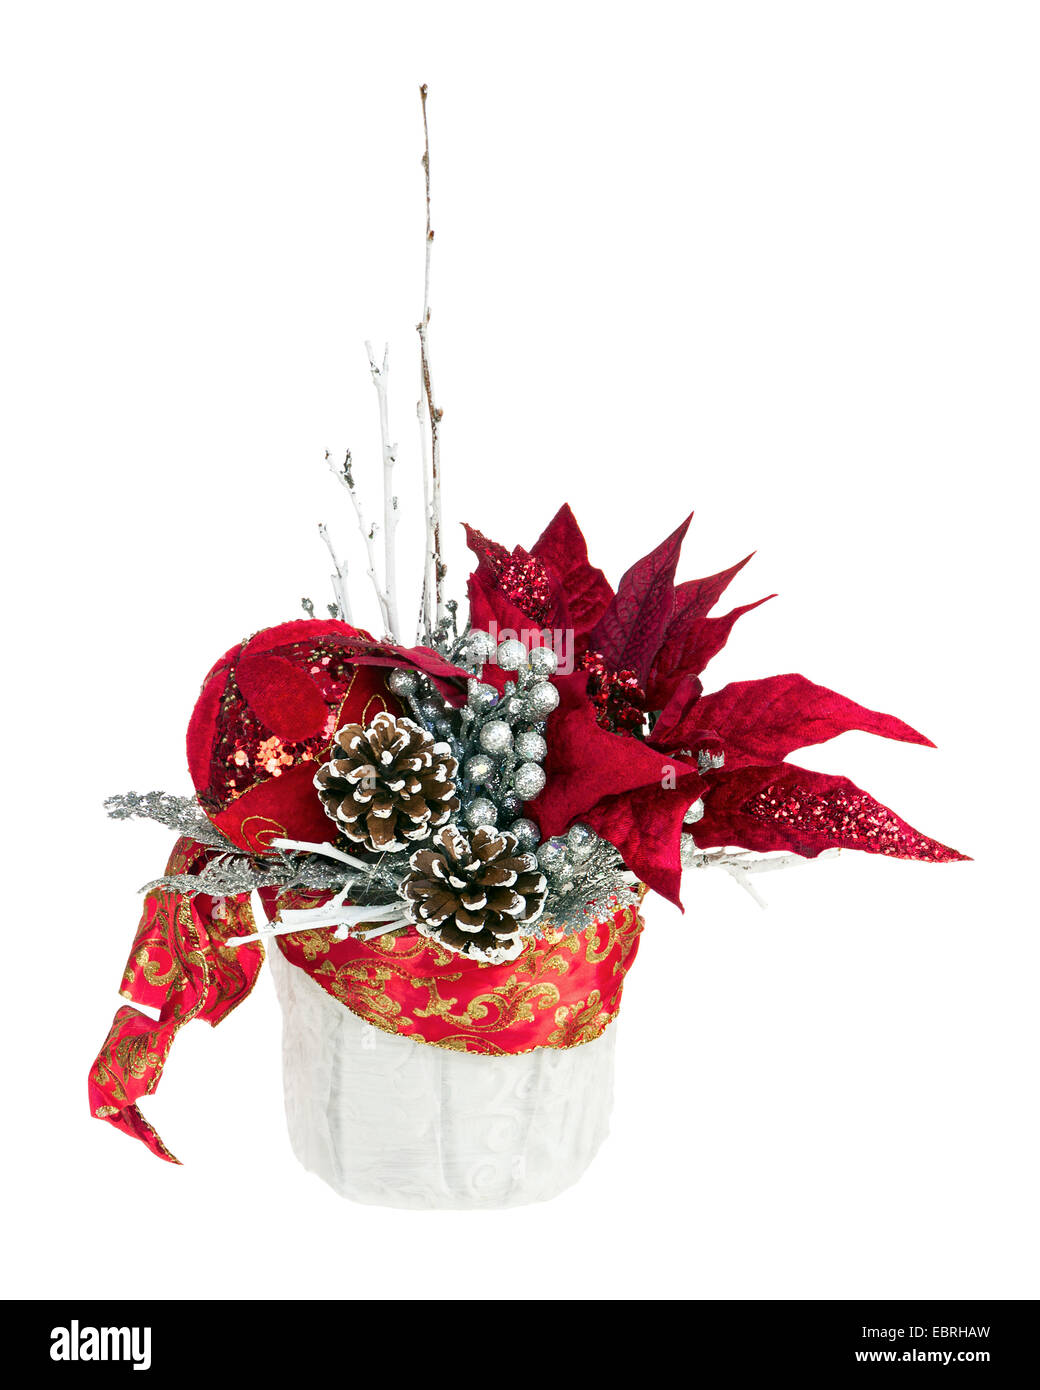 Composition de Noël étoile avec des branches, des pommes de pin, des rubans et des ballons en vase isolé sur fond blanc. Libre. Banque D'Images